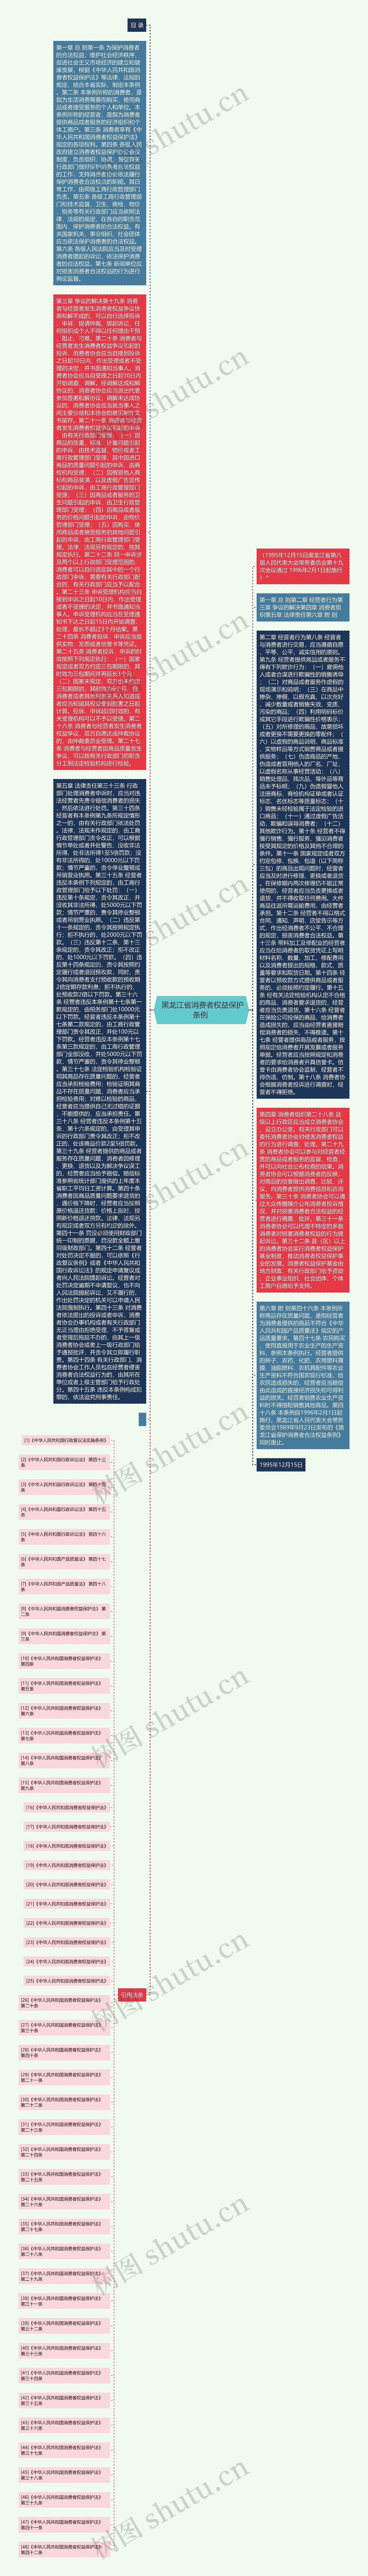  黑龙江省消费者权益保护条例 